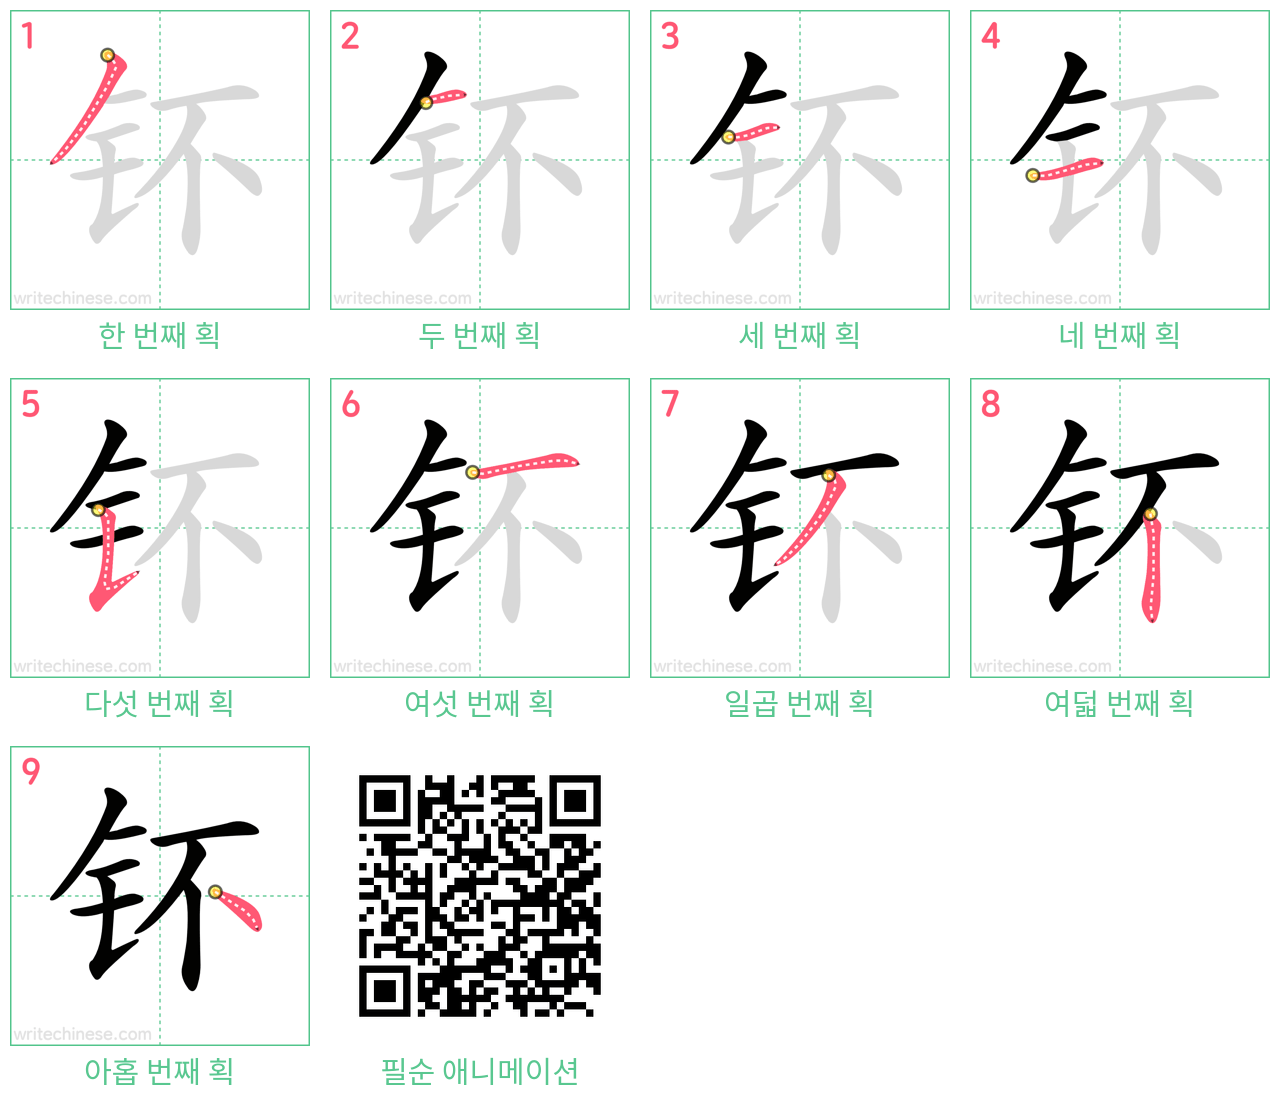 钚 step-by-step stroke order diagrams